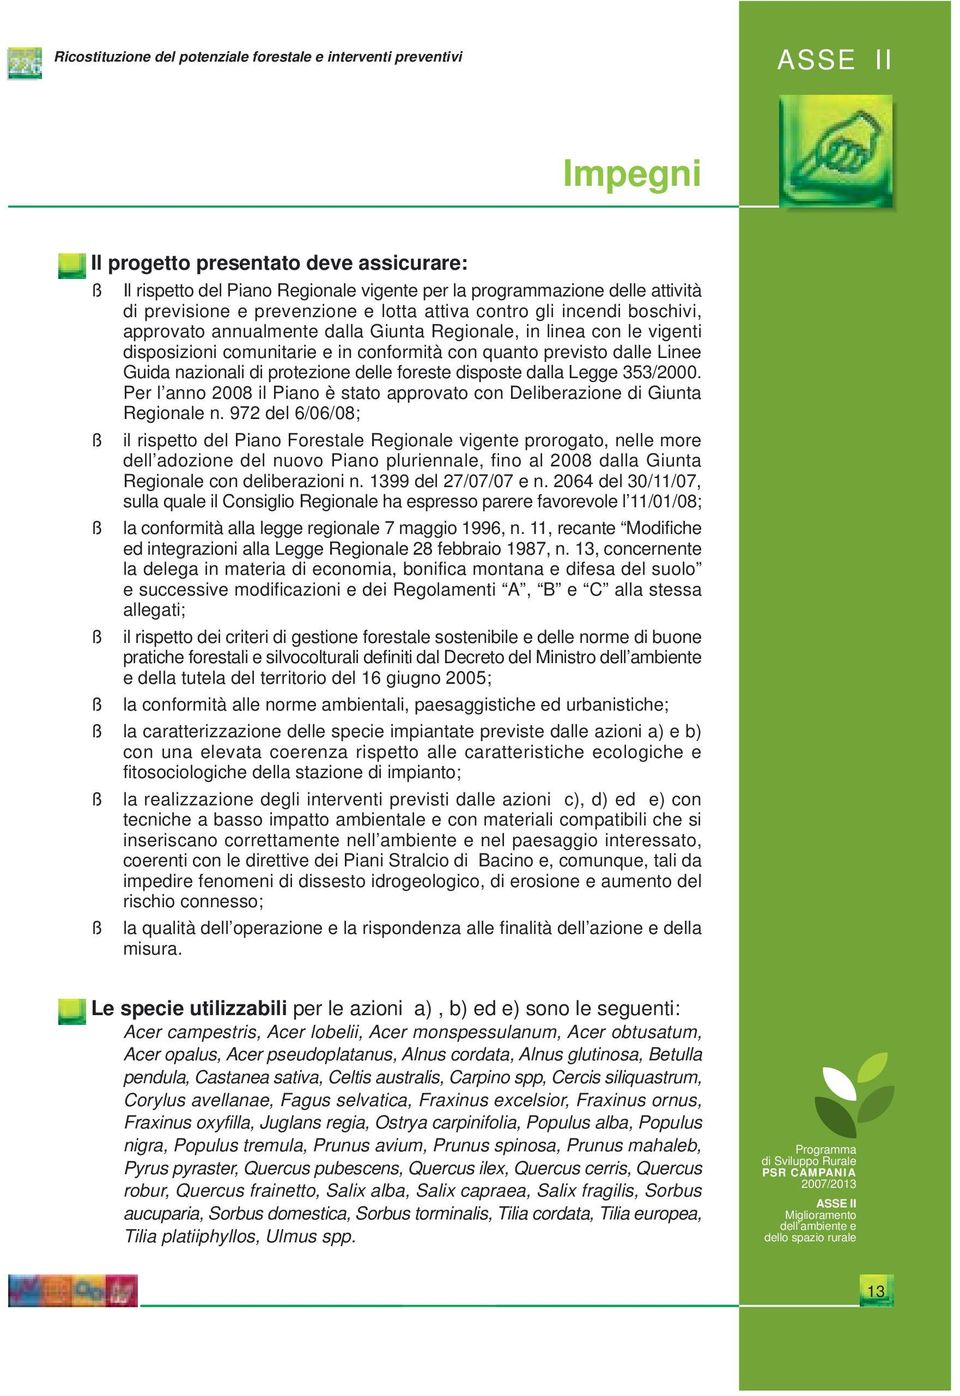 dalle Linee Guida nazionali di protezione delle foreste disposte dalla Legge 353/2000. Per l anno 2008 il Piano è stato approvato con Deliberazione di Giunta Regionale n.